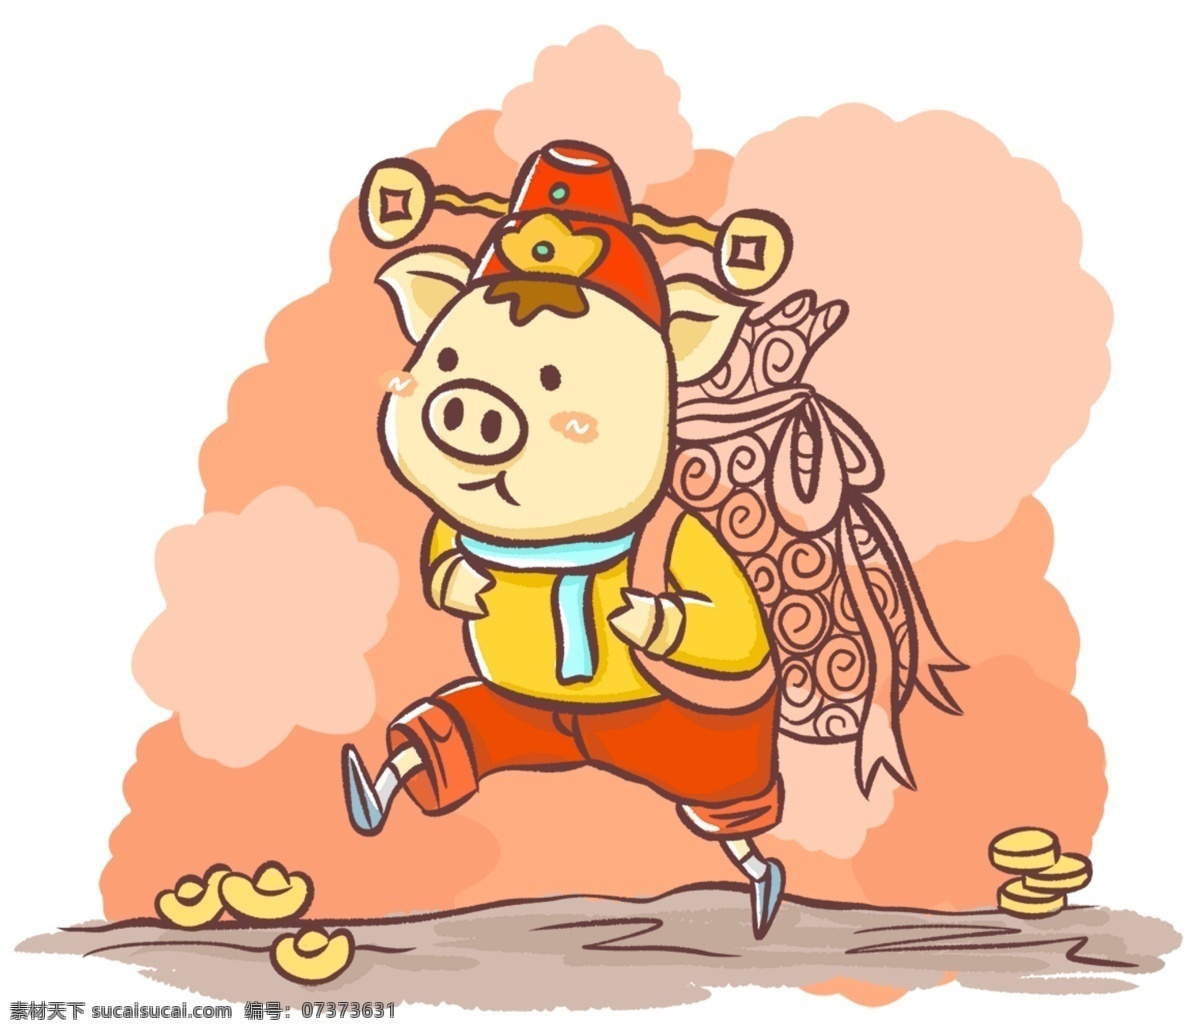 可爱 猪 形象 卡通 手绘 精美 插画 海报插画 广告插画 小清新 简约风 装饰图案 过年 新年 可爱猪形象